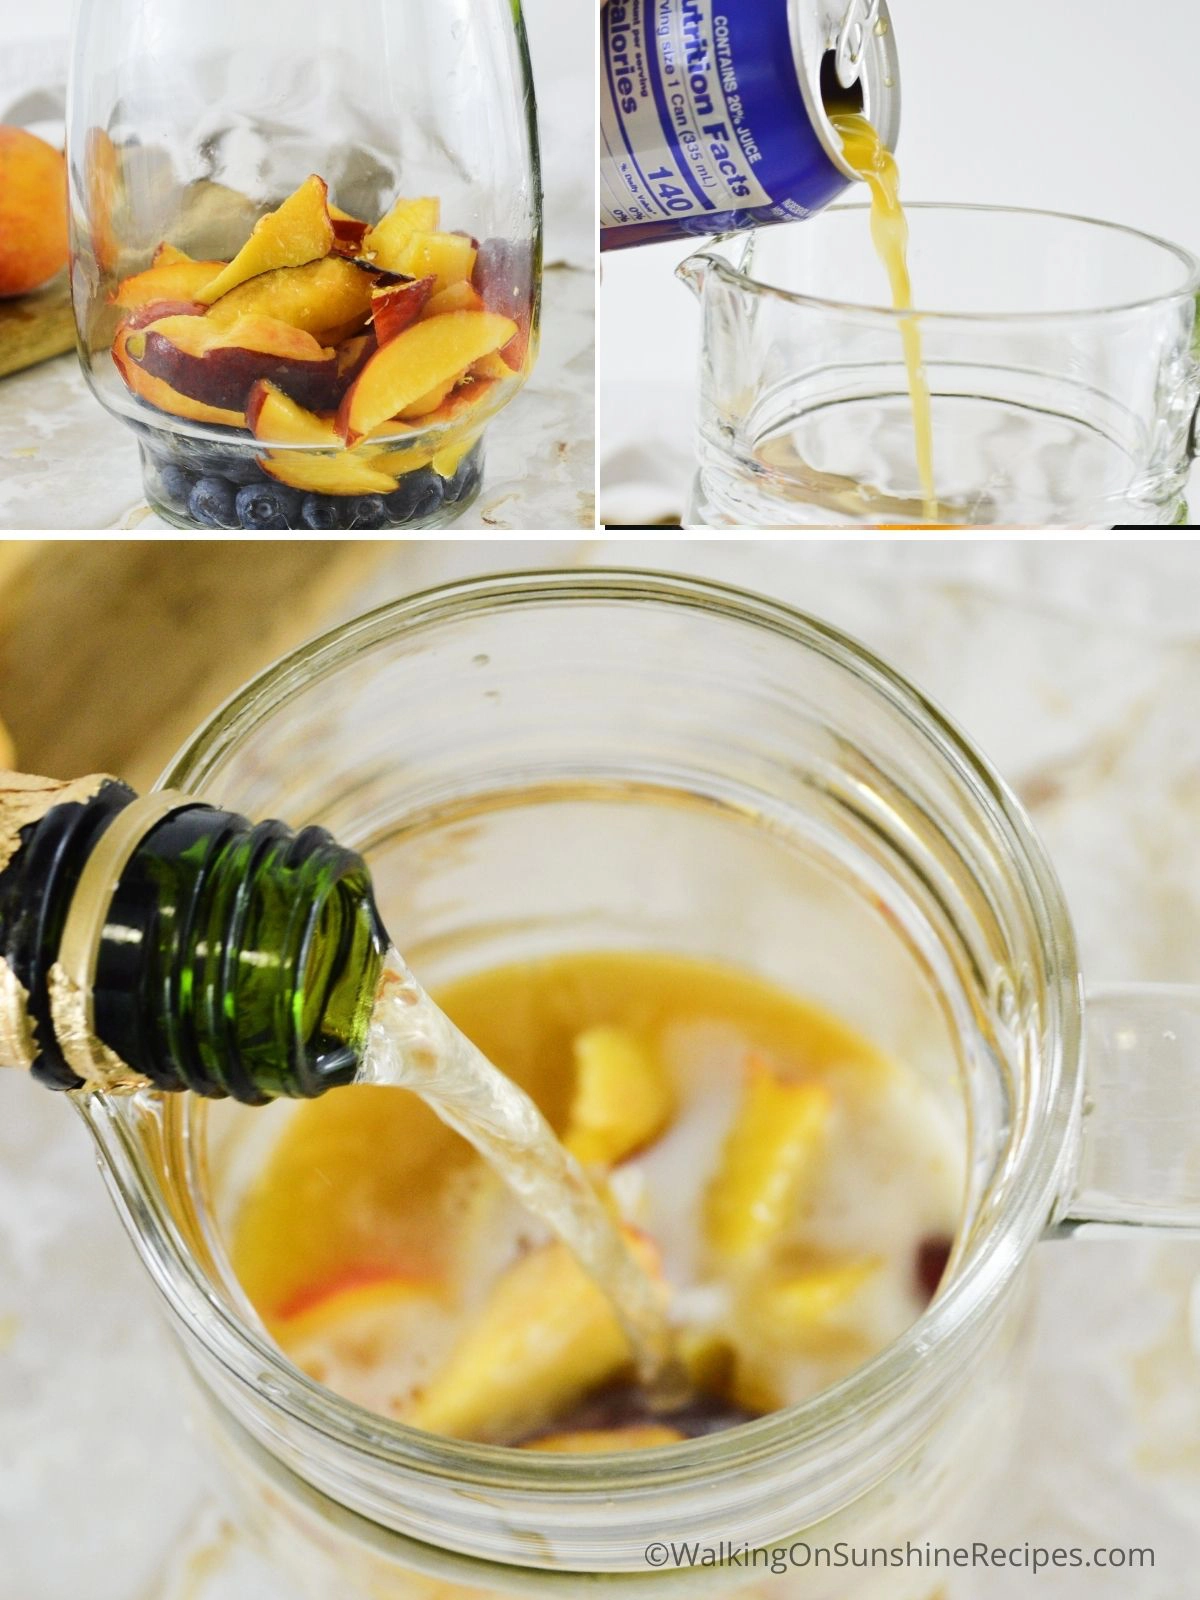 Add sparkling water, peach nectar.